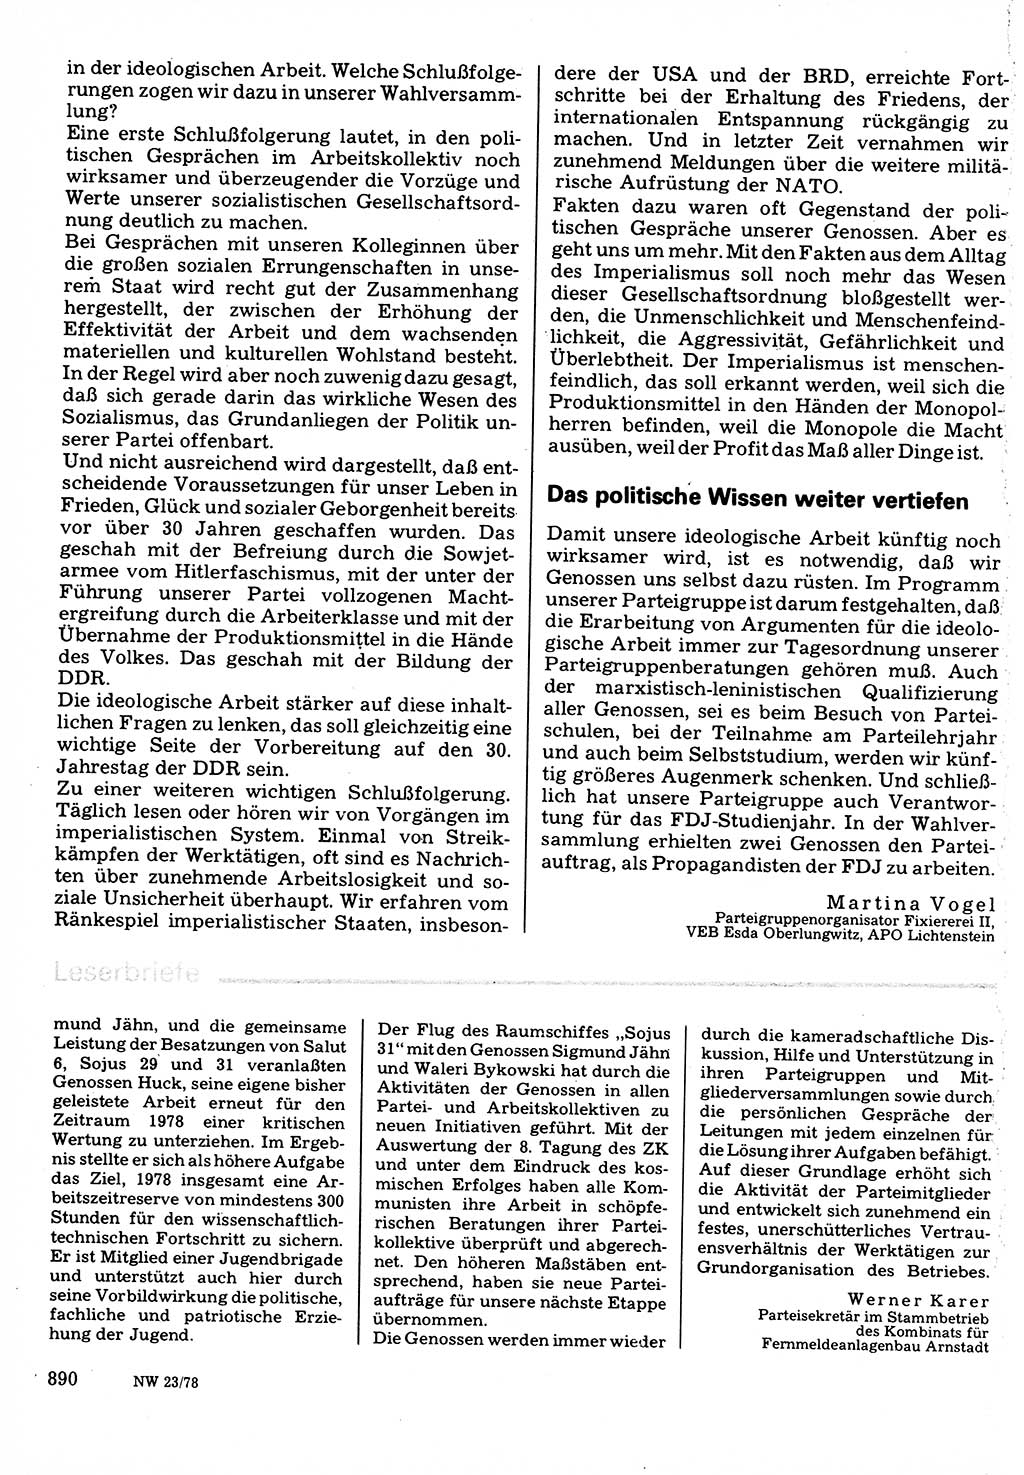 Neuer Weg (NW), Organ des Zentralkomitees (ZK) der SED (Sozialistische Einheitspartei Deutschlands) für Fragen des Parteilebens, 33. Jahrgang [Deutsche Demokratische Republik (DDR)] 1978, Seite 890 (NW ZK SED DDR 1978, S. 890)